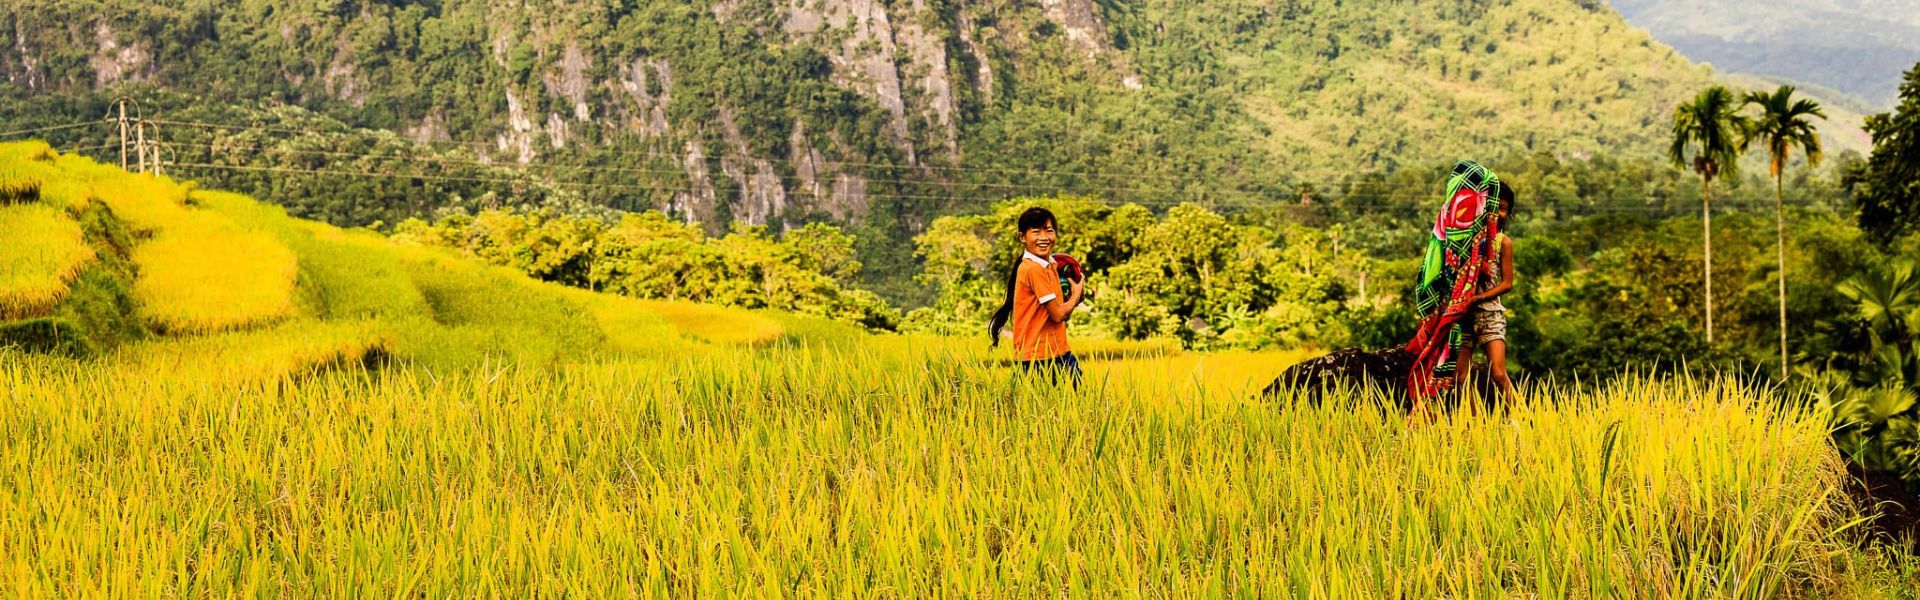 Pu Luong - Consejos de viaje | Guía de viajes a Vietnam